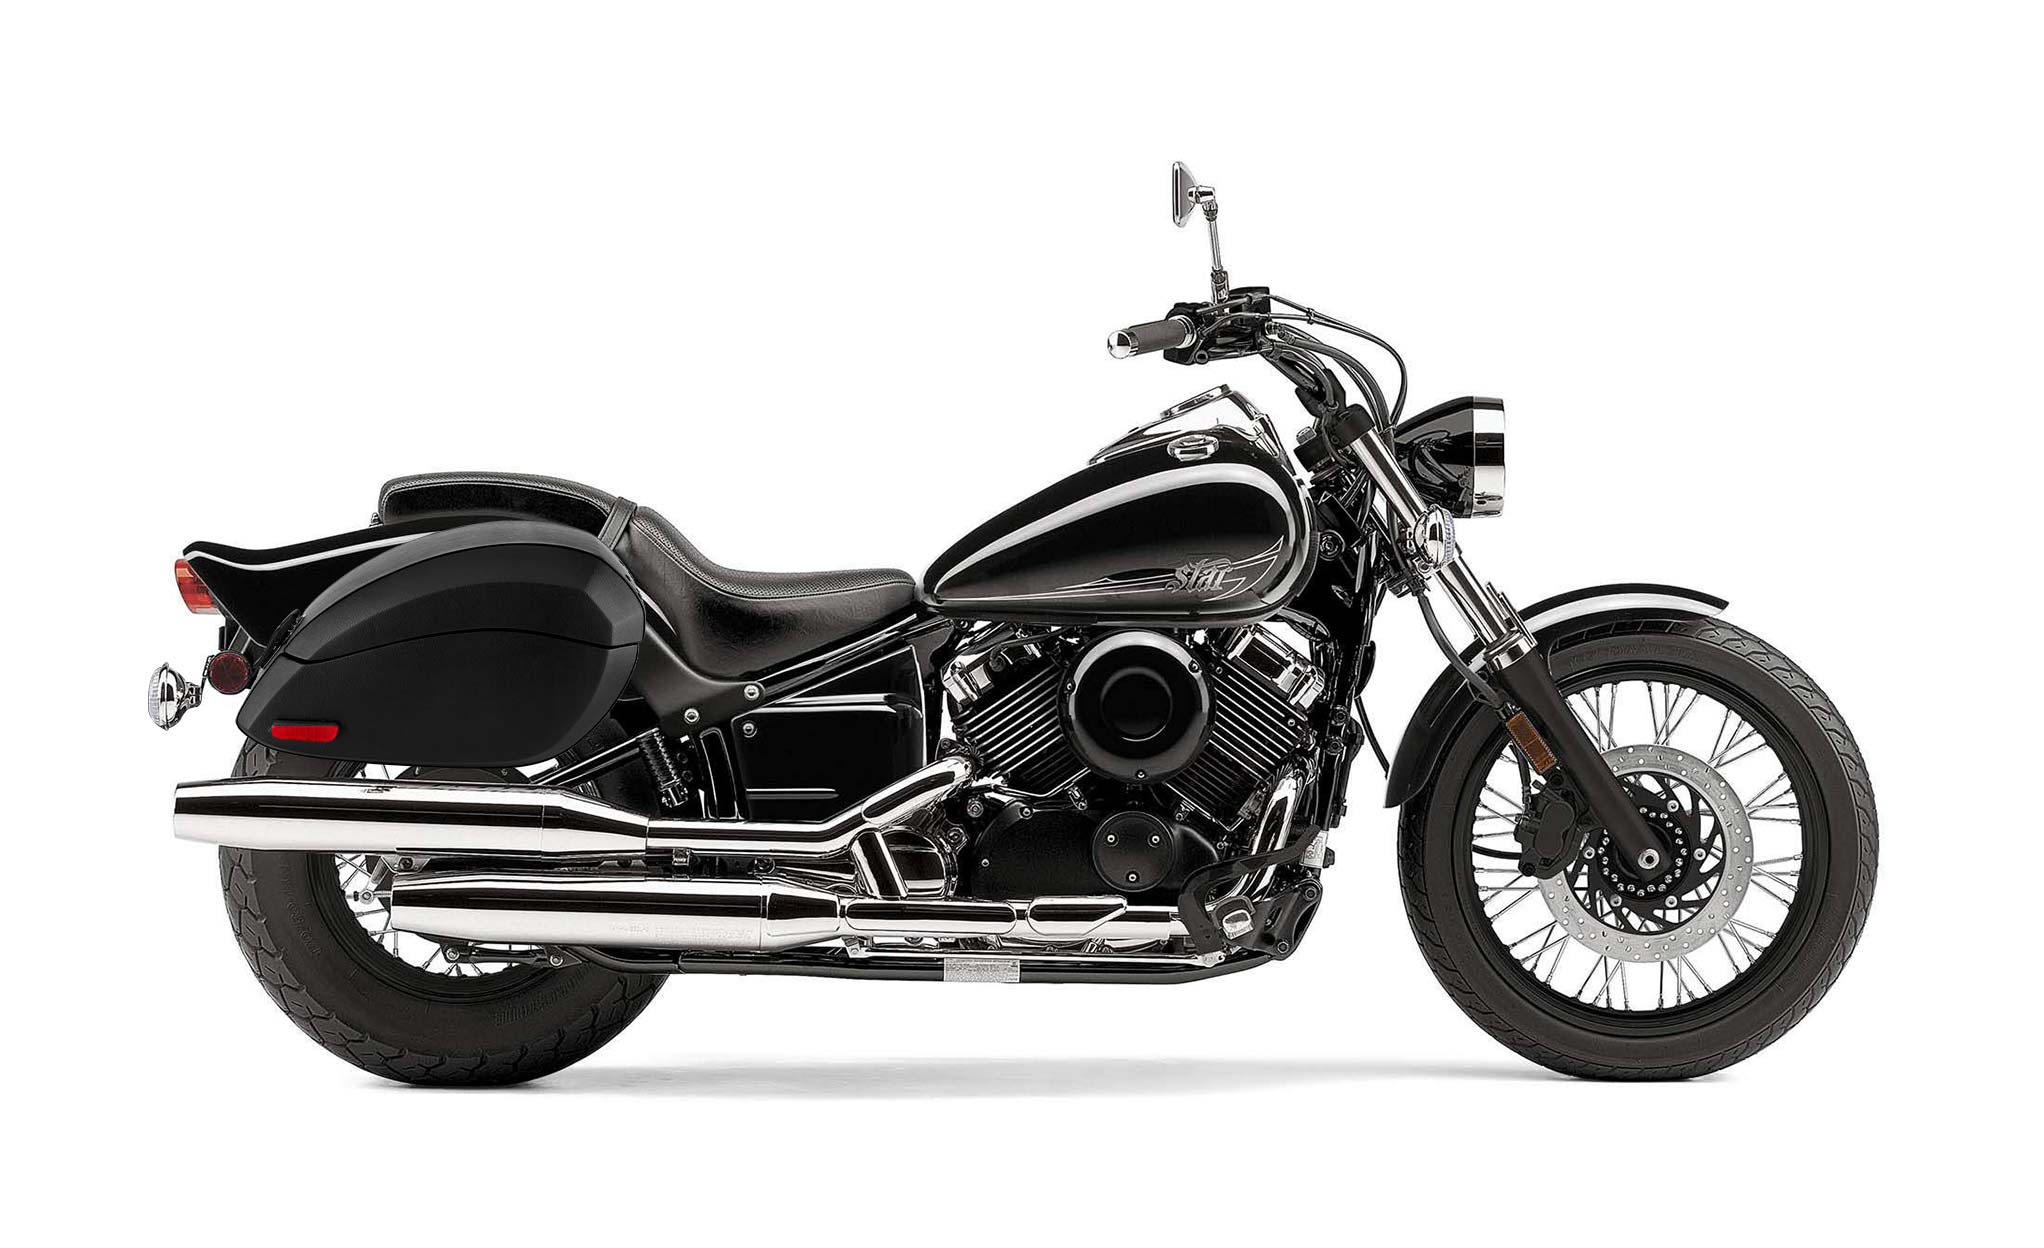 Viking Phantom Large Yamaha V Star 650 Custom Xvs65T Leather Wrapped Motorcycle Hard Saddlebags on Bike Photo @expand